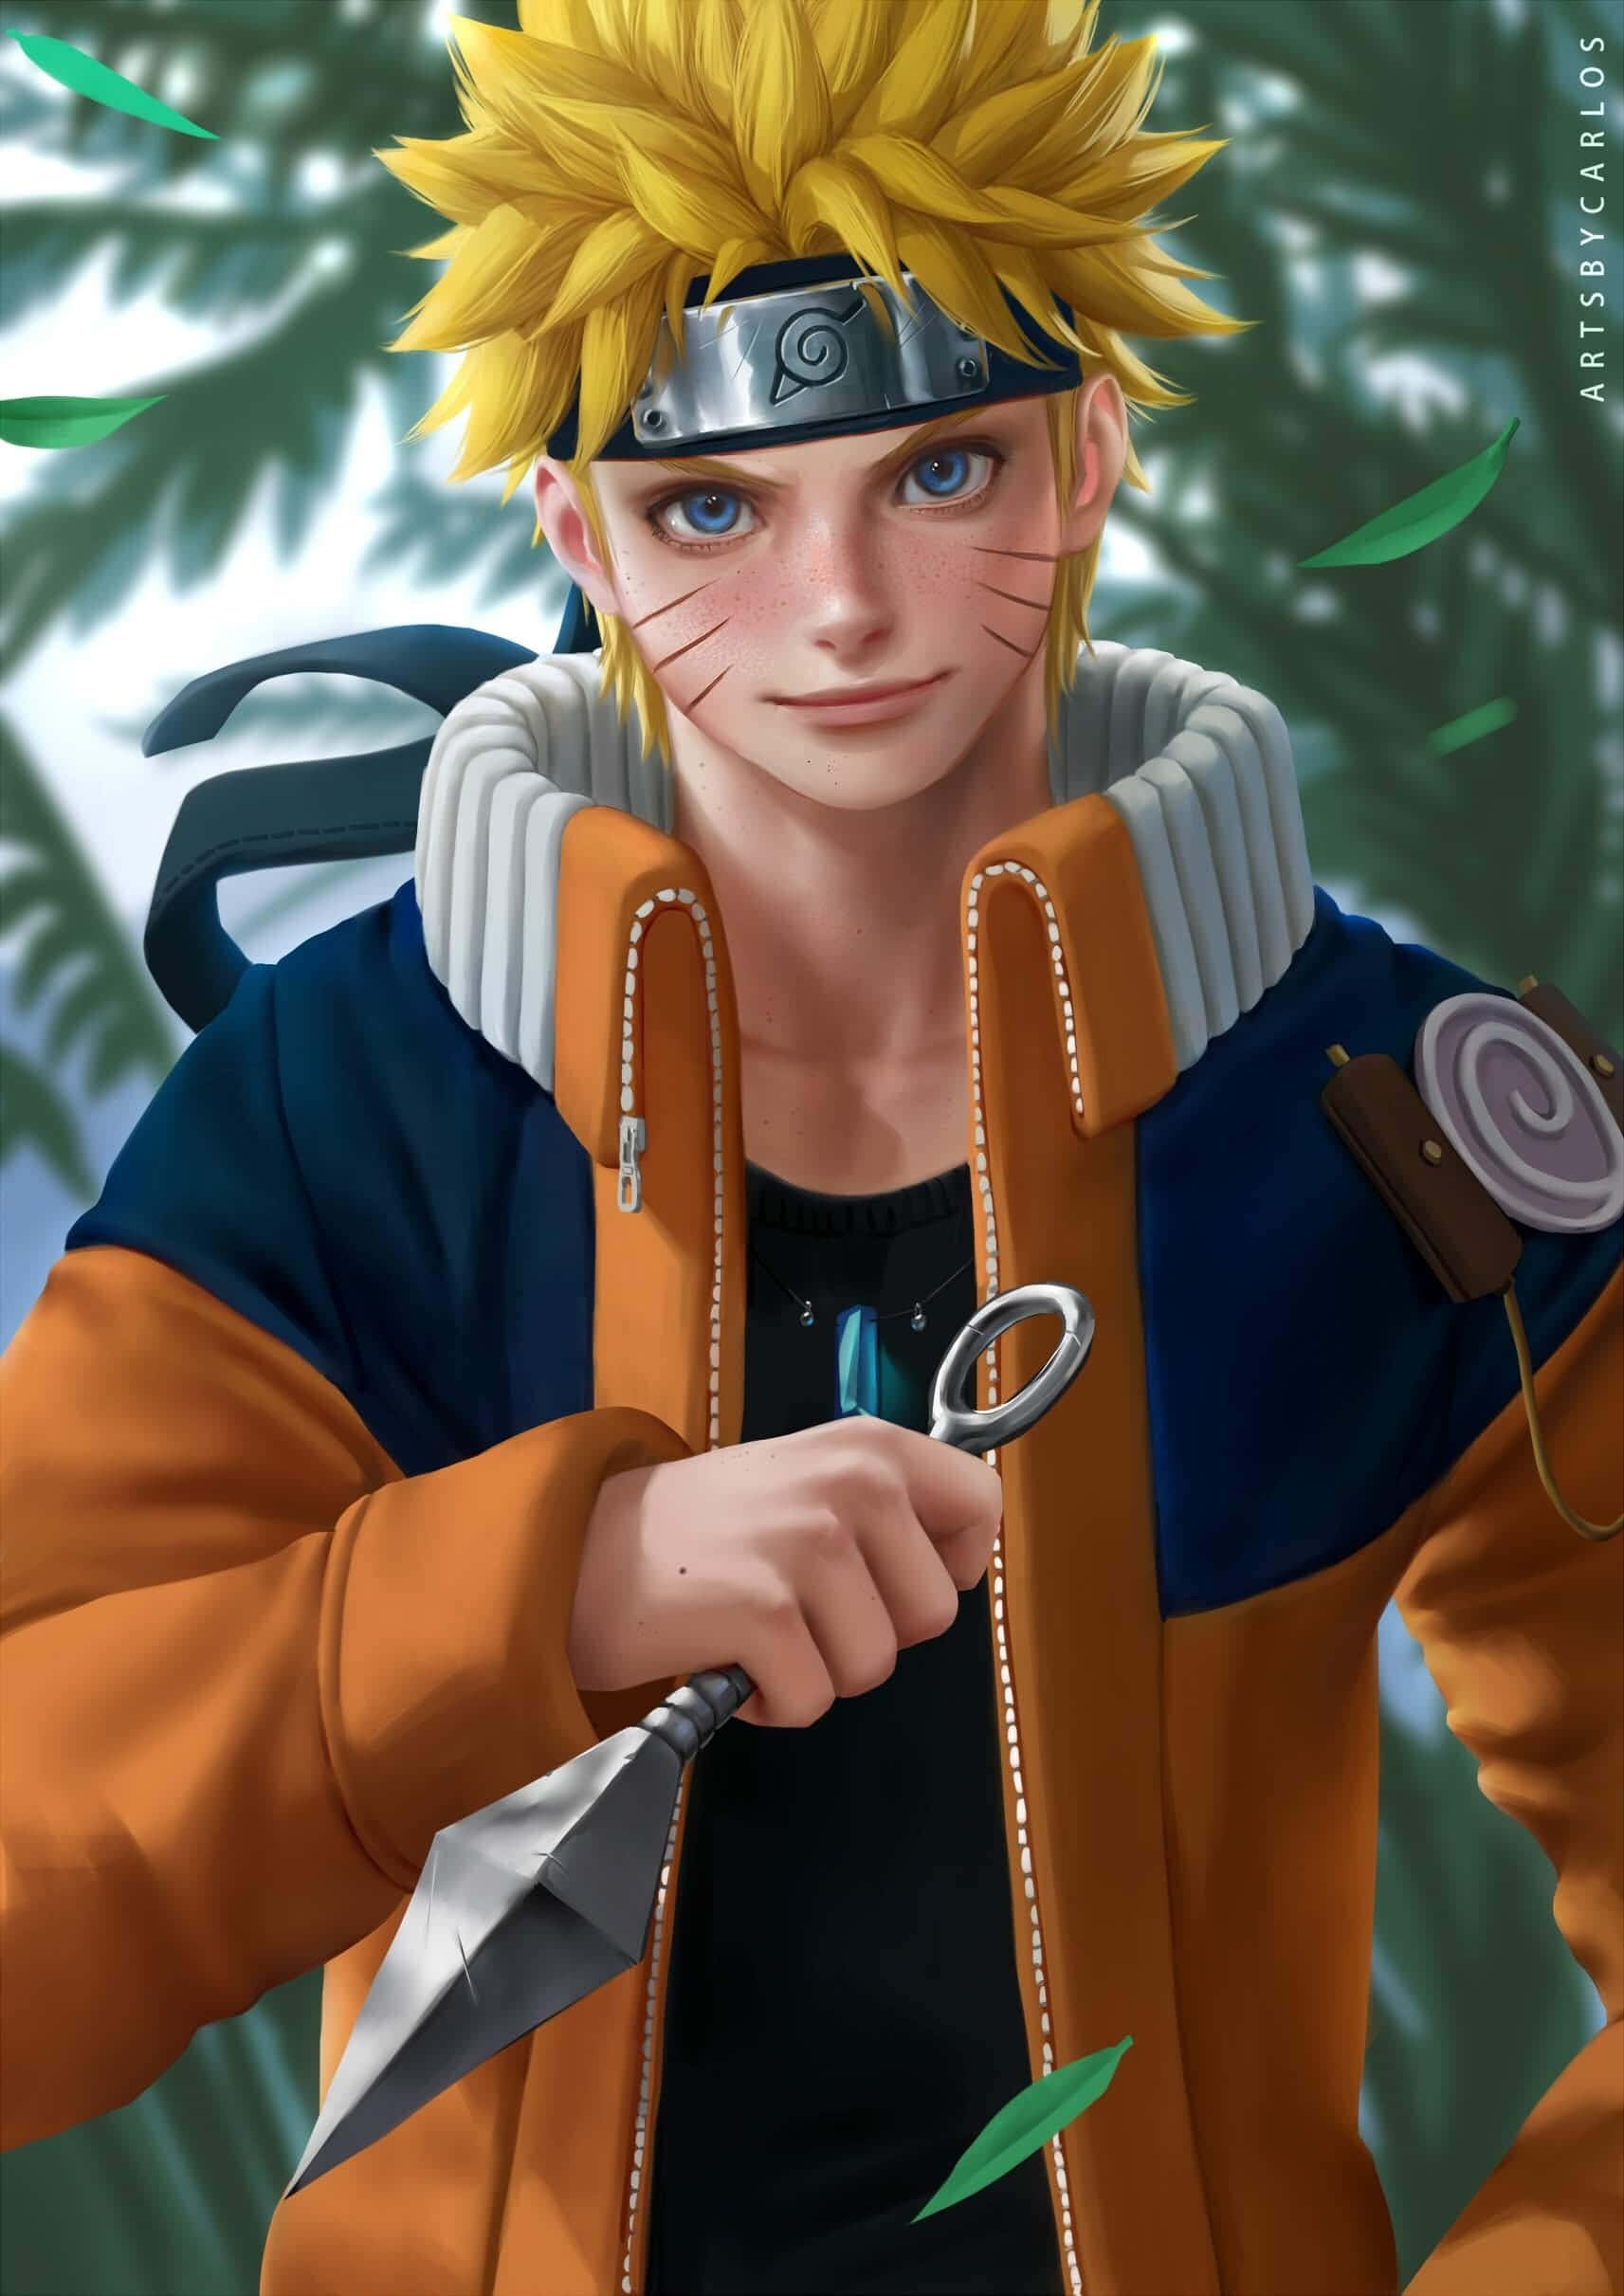 Narutovon Naruto - Naruto-hintergrundbild Wallpaper